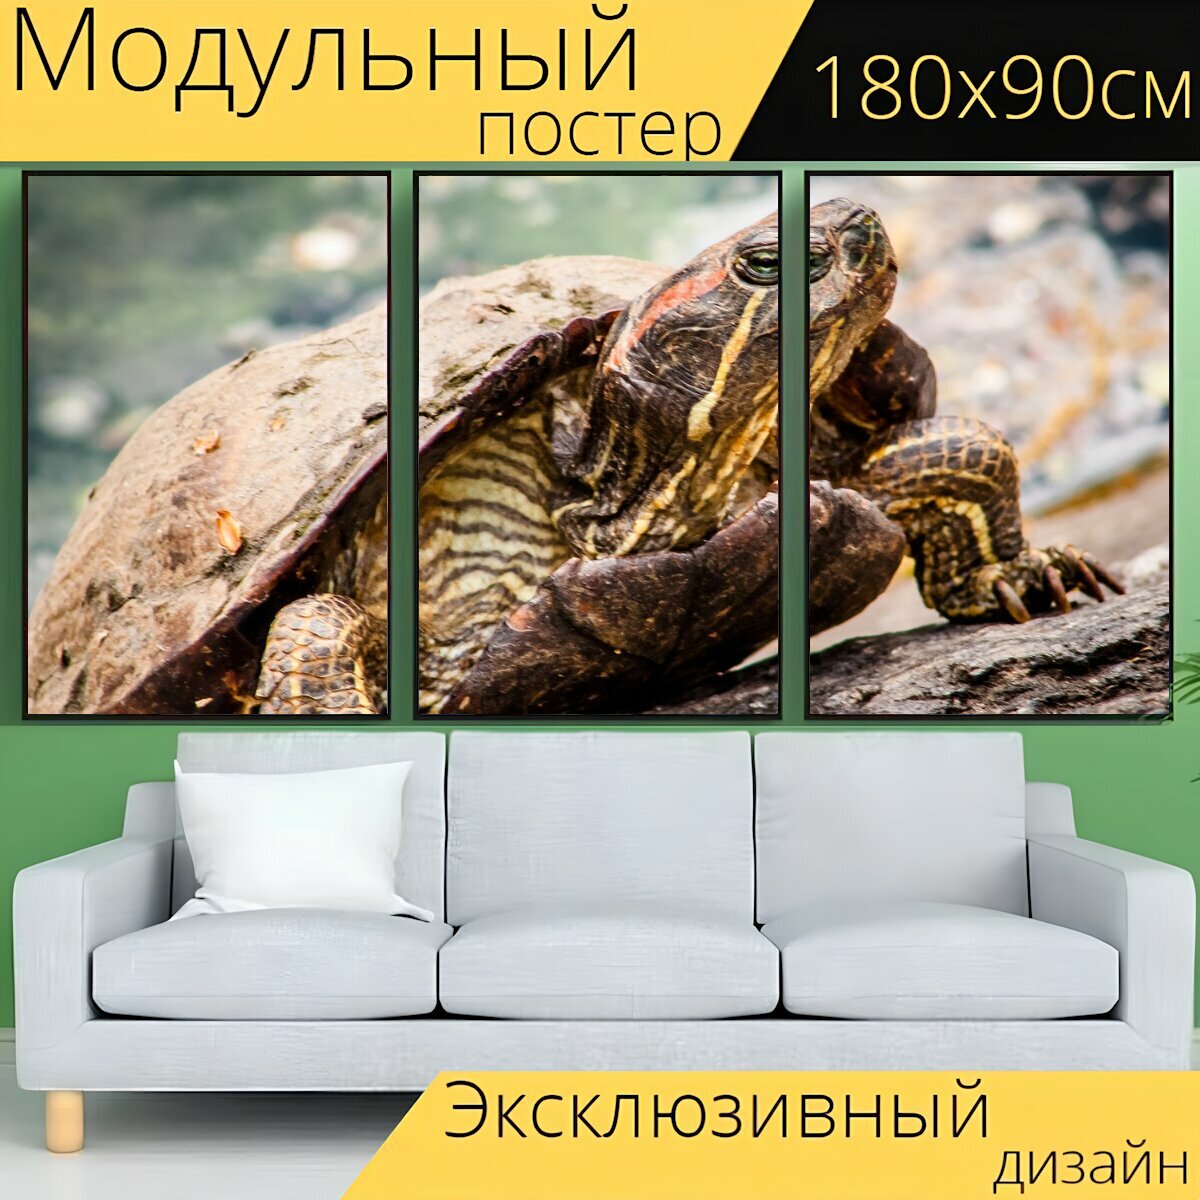 Модульный постер "Черепаха, парк, природа" 180 x 90 см. для интерьера